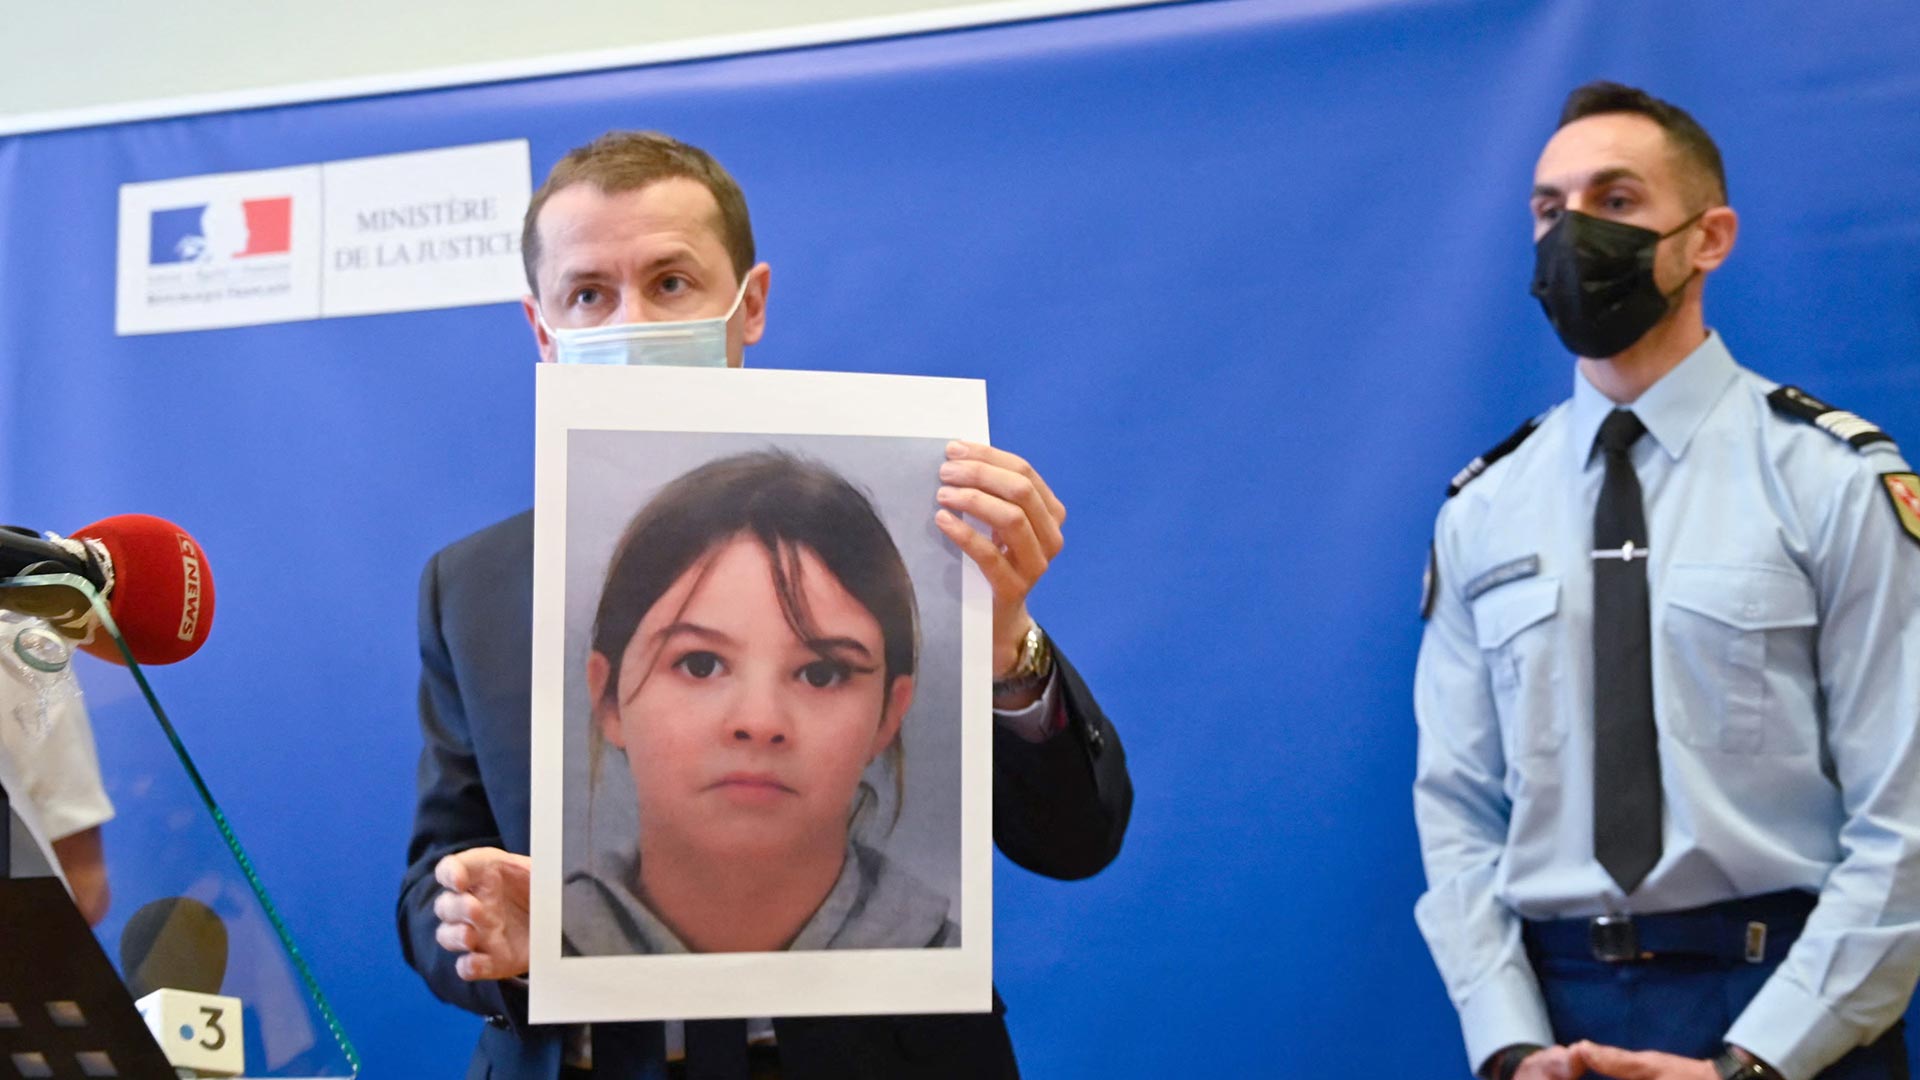 Desesperada búsqueda en Francia de Mia, una niña de 8 años que fue  secuestrada por tres hombres - Infobae